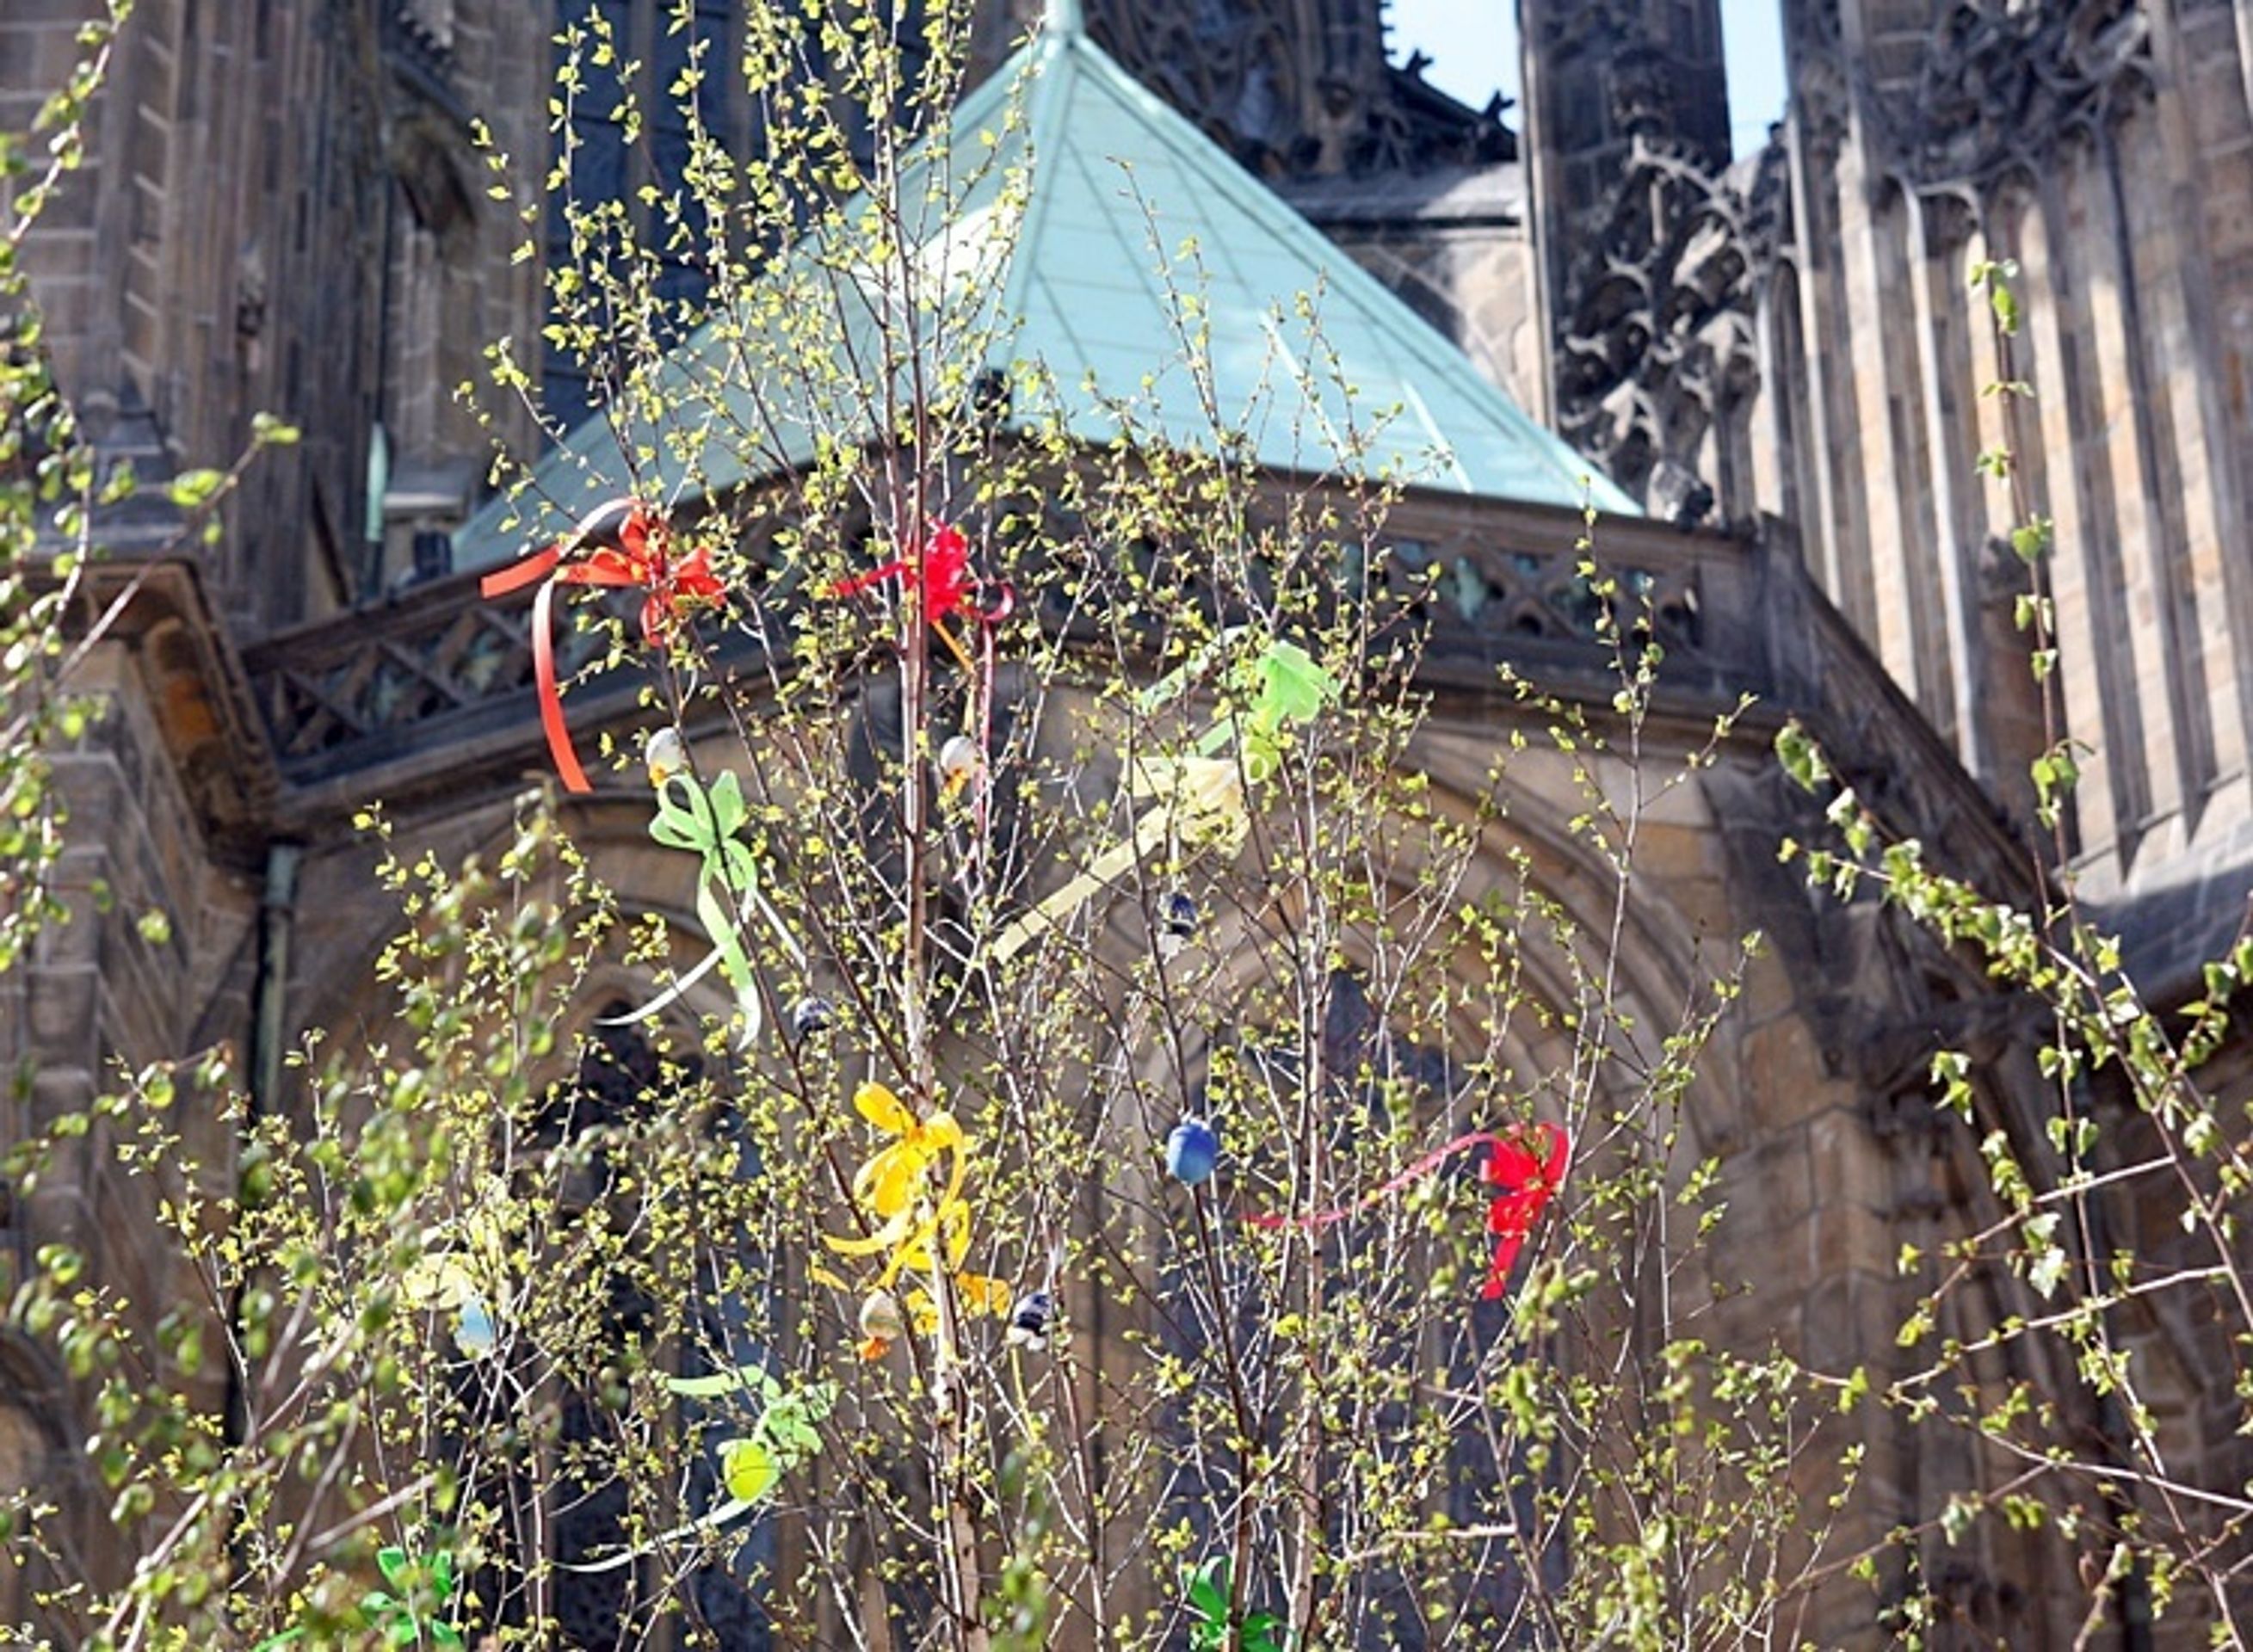 Velikonoce dorazily na Pražský hrad - Na Velikonoce se vyzbrojíte na Hradě - video (3/6)